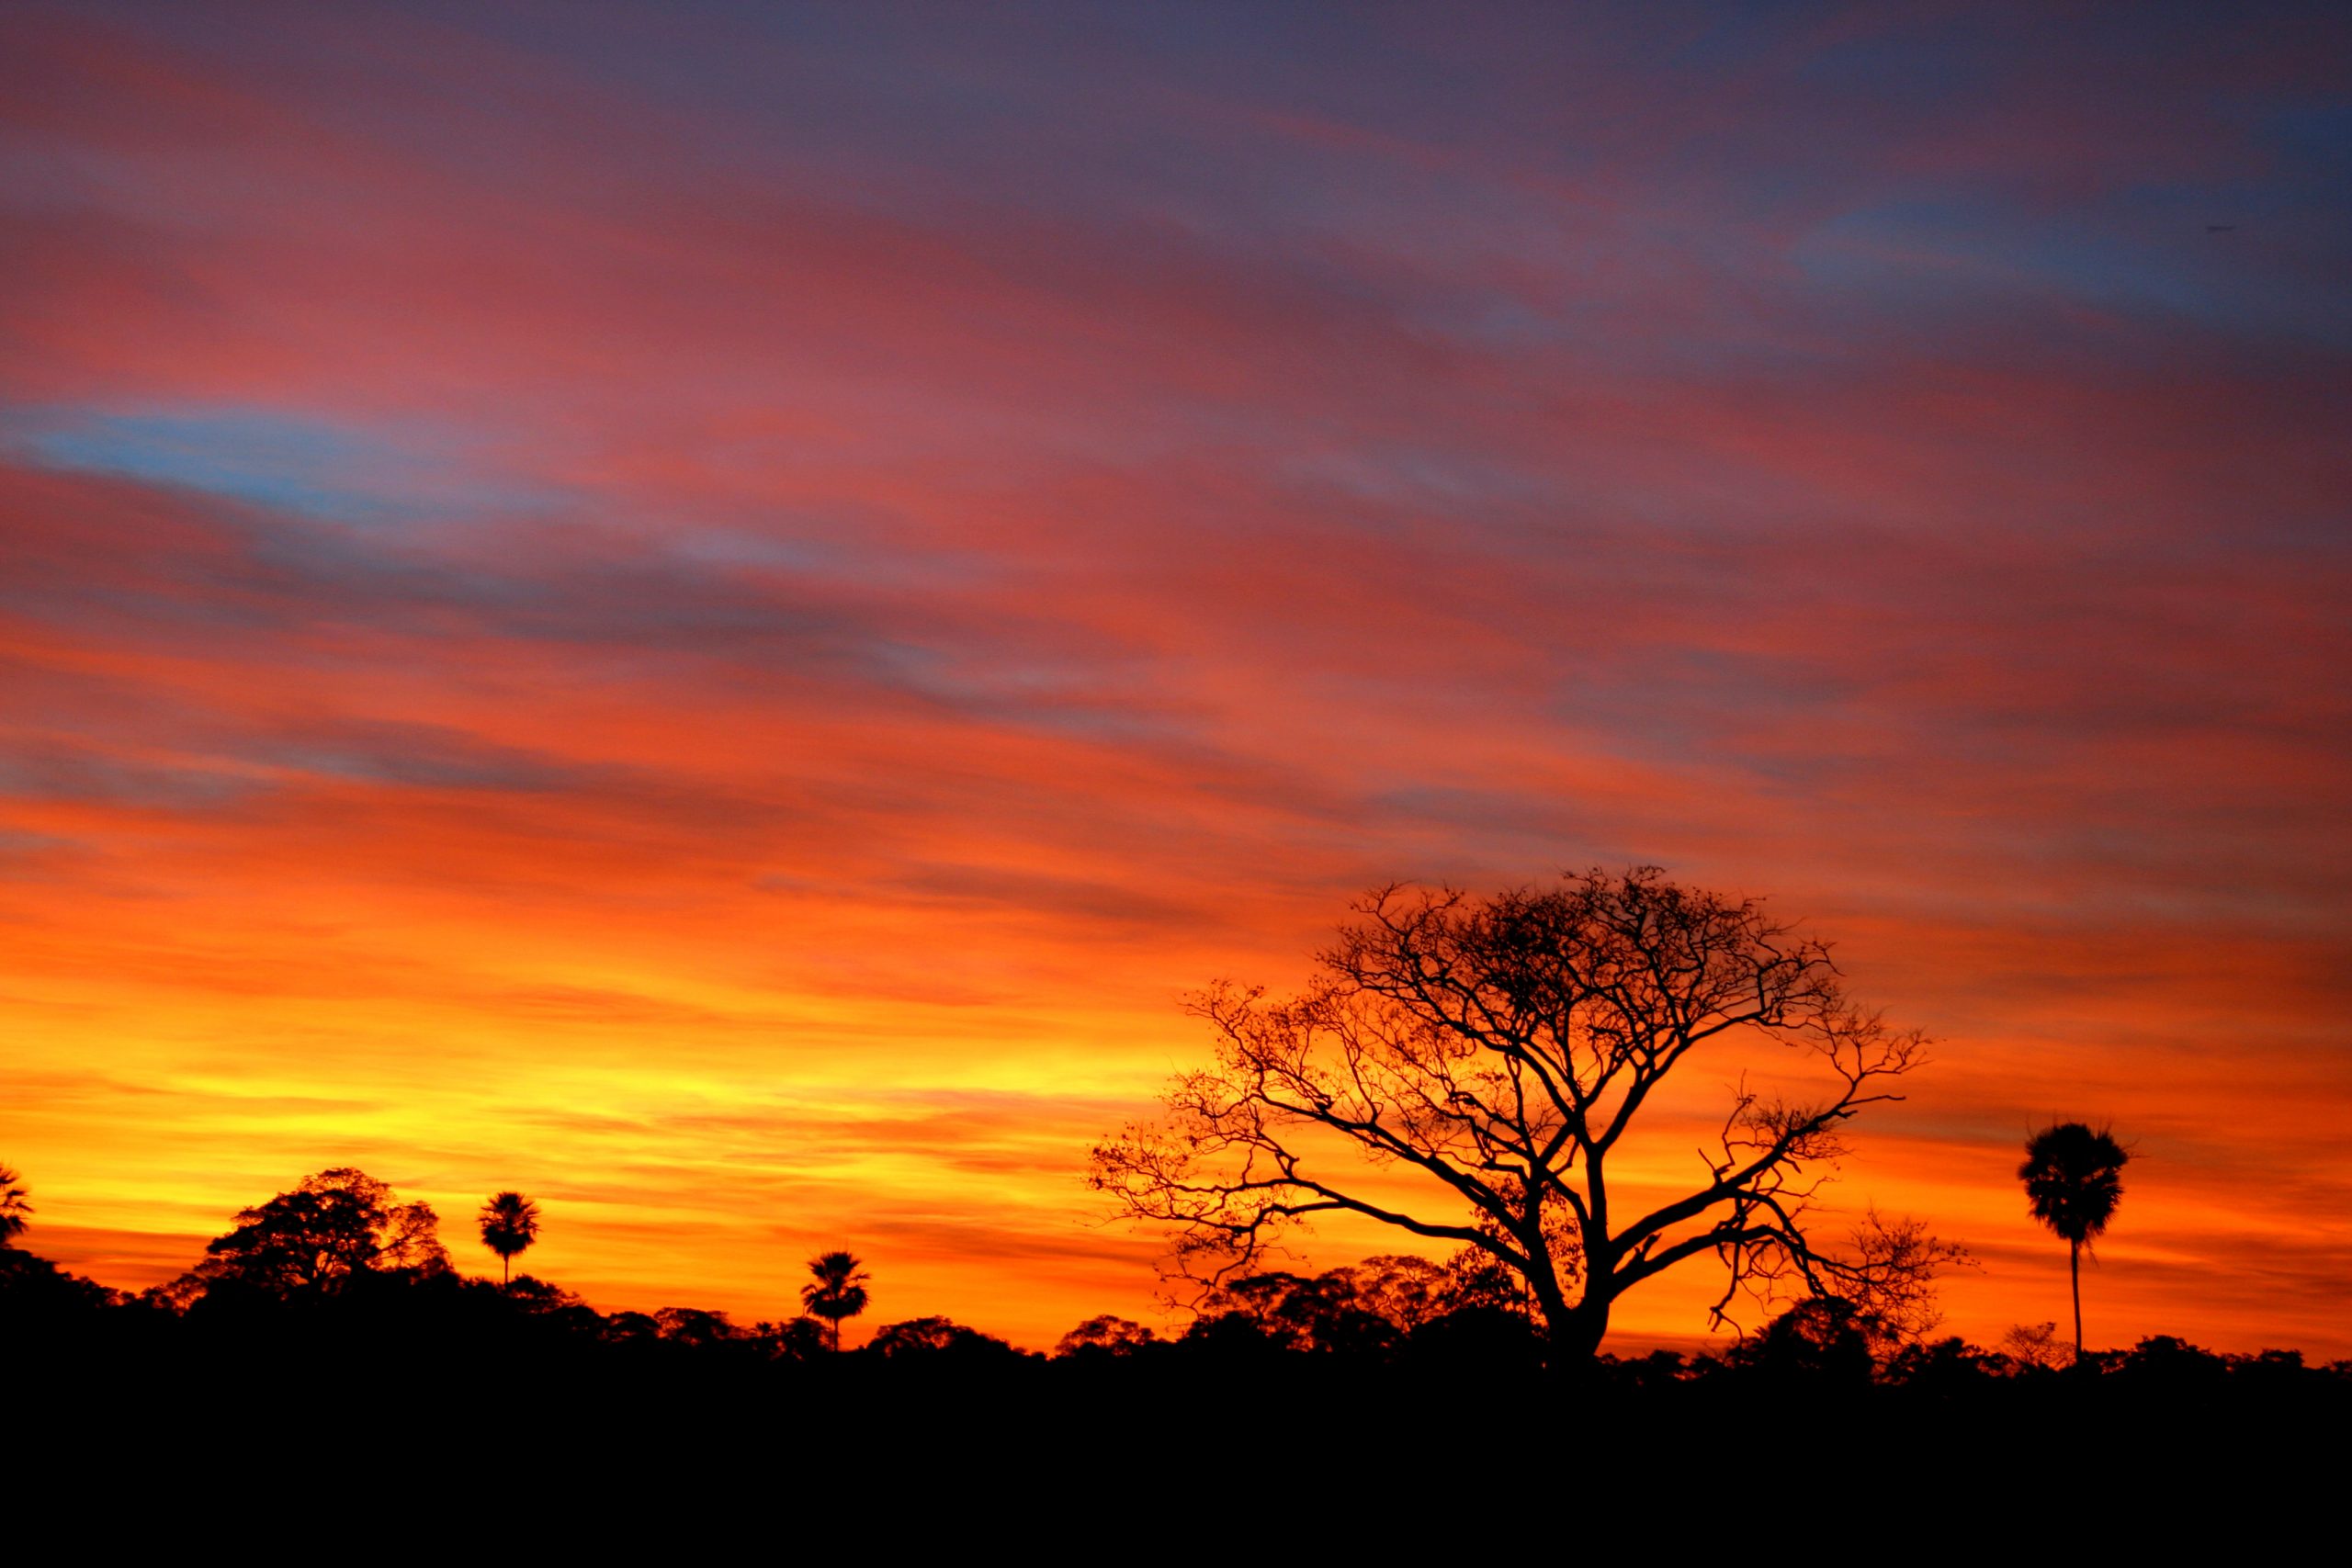 Sunset, Pantanal, Brazil.